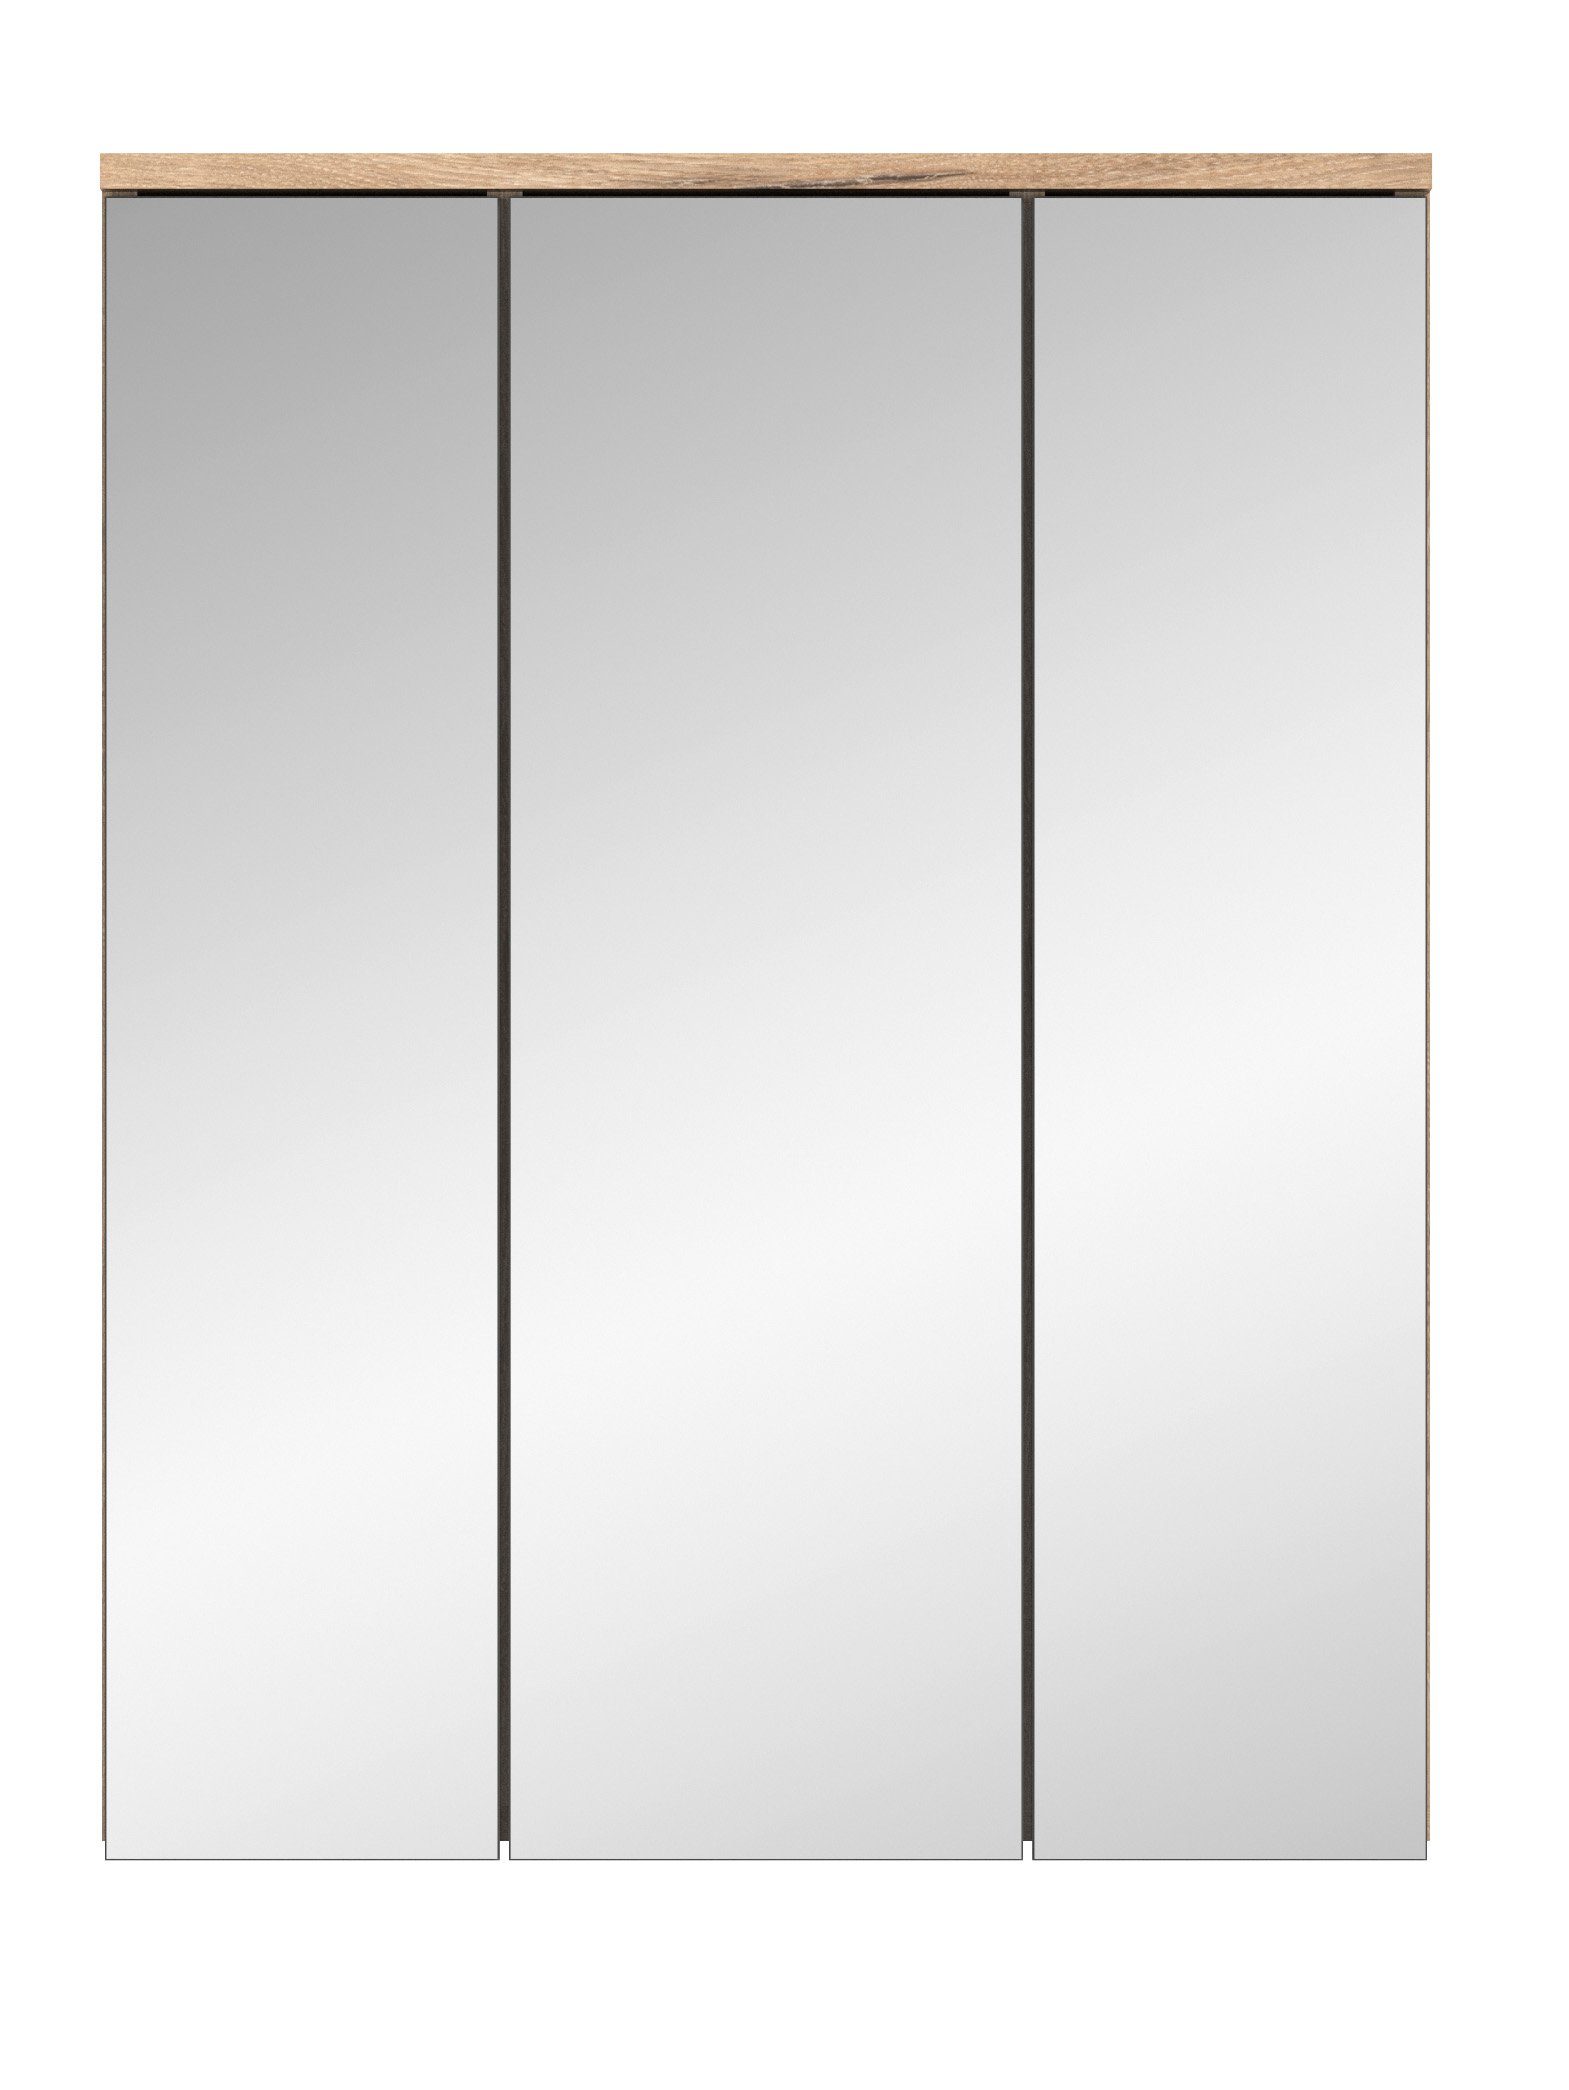 möbelando Spiegelschrank Missoula Moderner Spiegelschrank, Korpus aus Spanplatte in "Nox Oak", mit 3 Spiegeltüren und 9 Ablageböden, inkl. 1 LED-Aufbauleuchte, Schalter und Steckdose. Breite 60 cm, Höhe 77 cm, Tiefe 18 cm